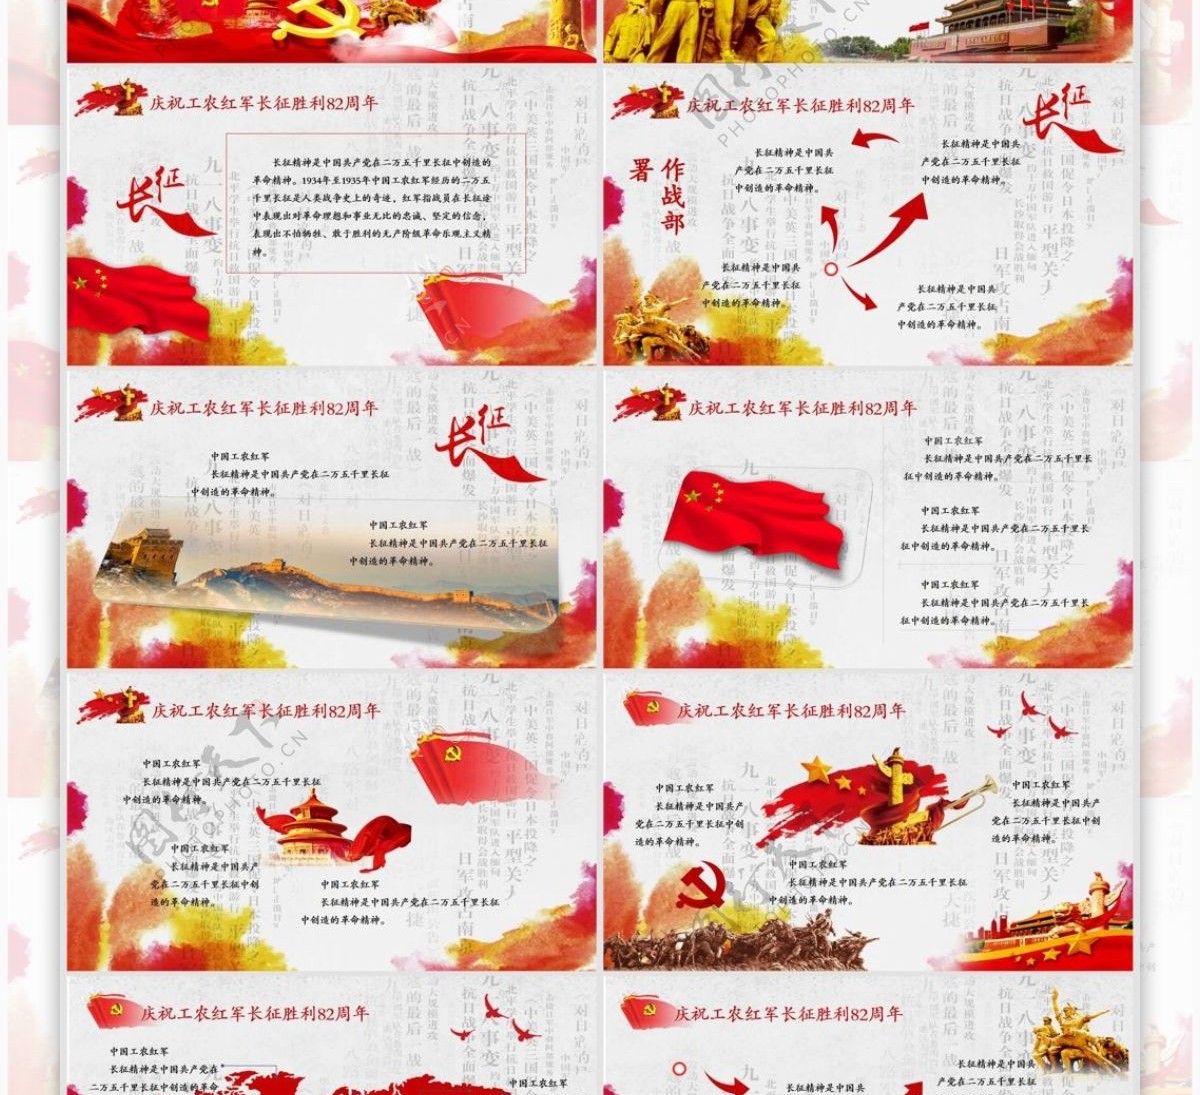 红色中国革命红军长征胜利节日庆祝模板